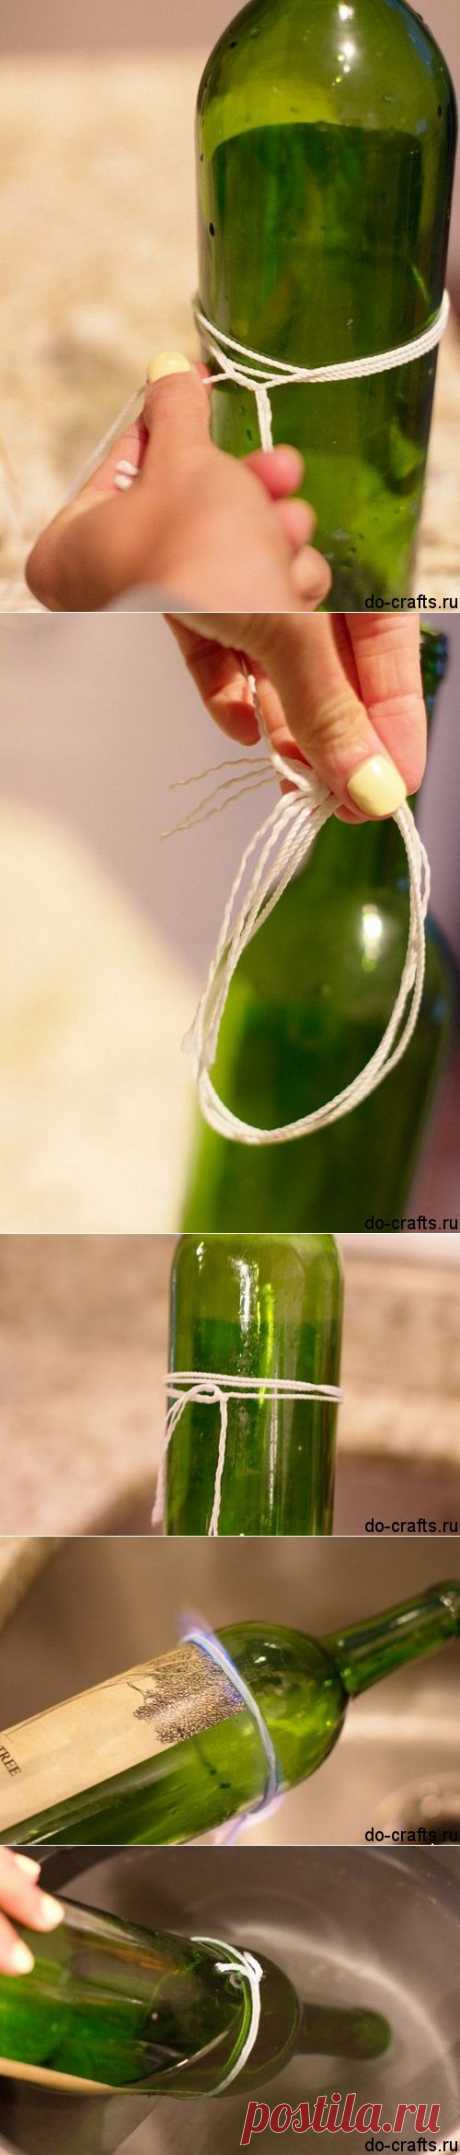 Как разрезать стеклянную бутылку ниткой | Самоделкино